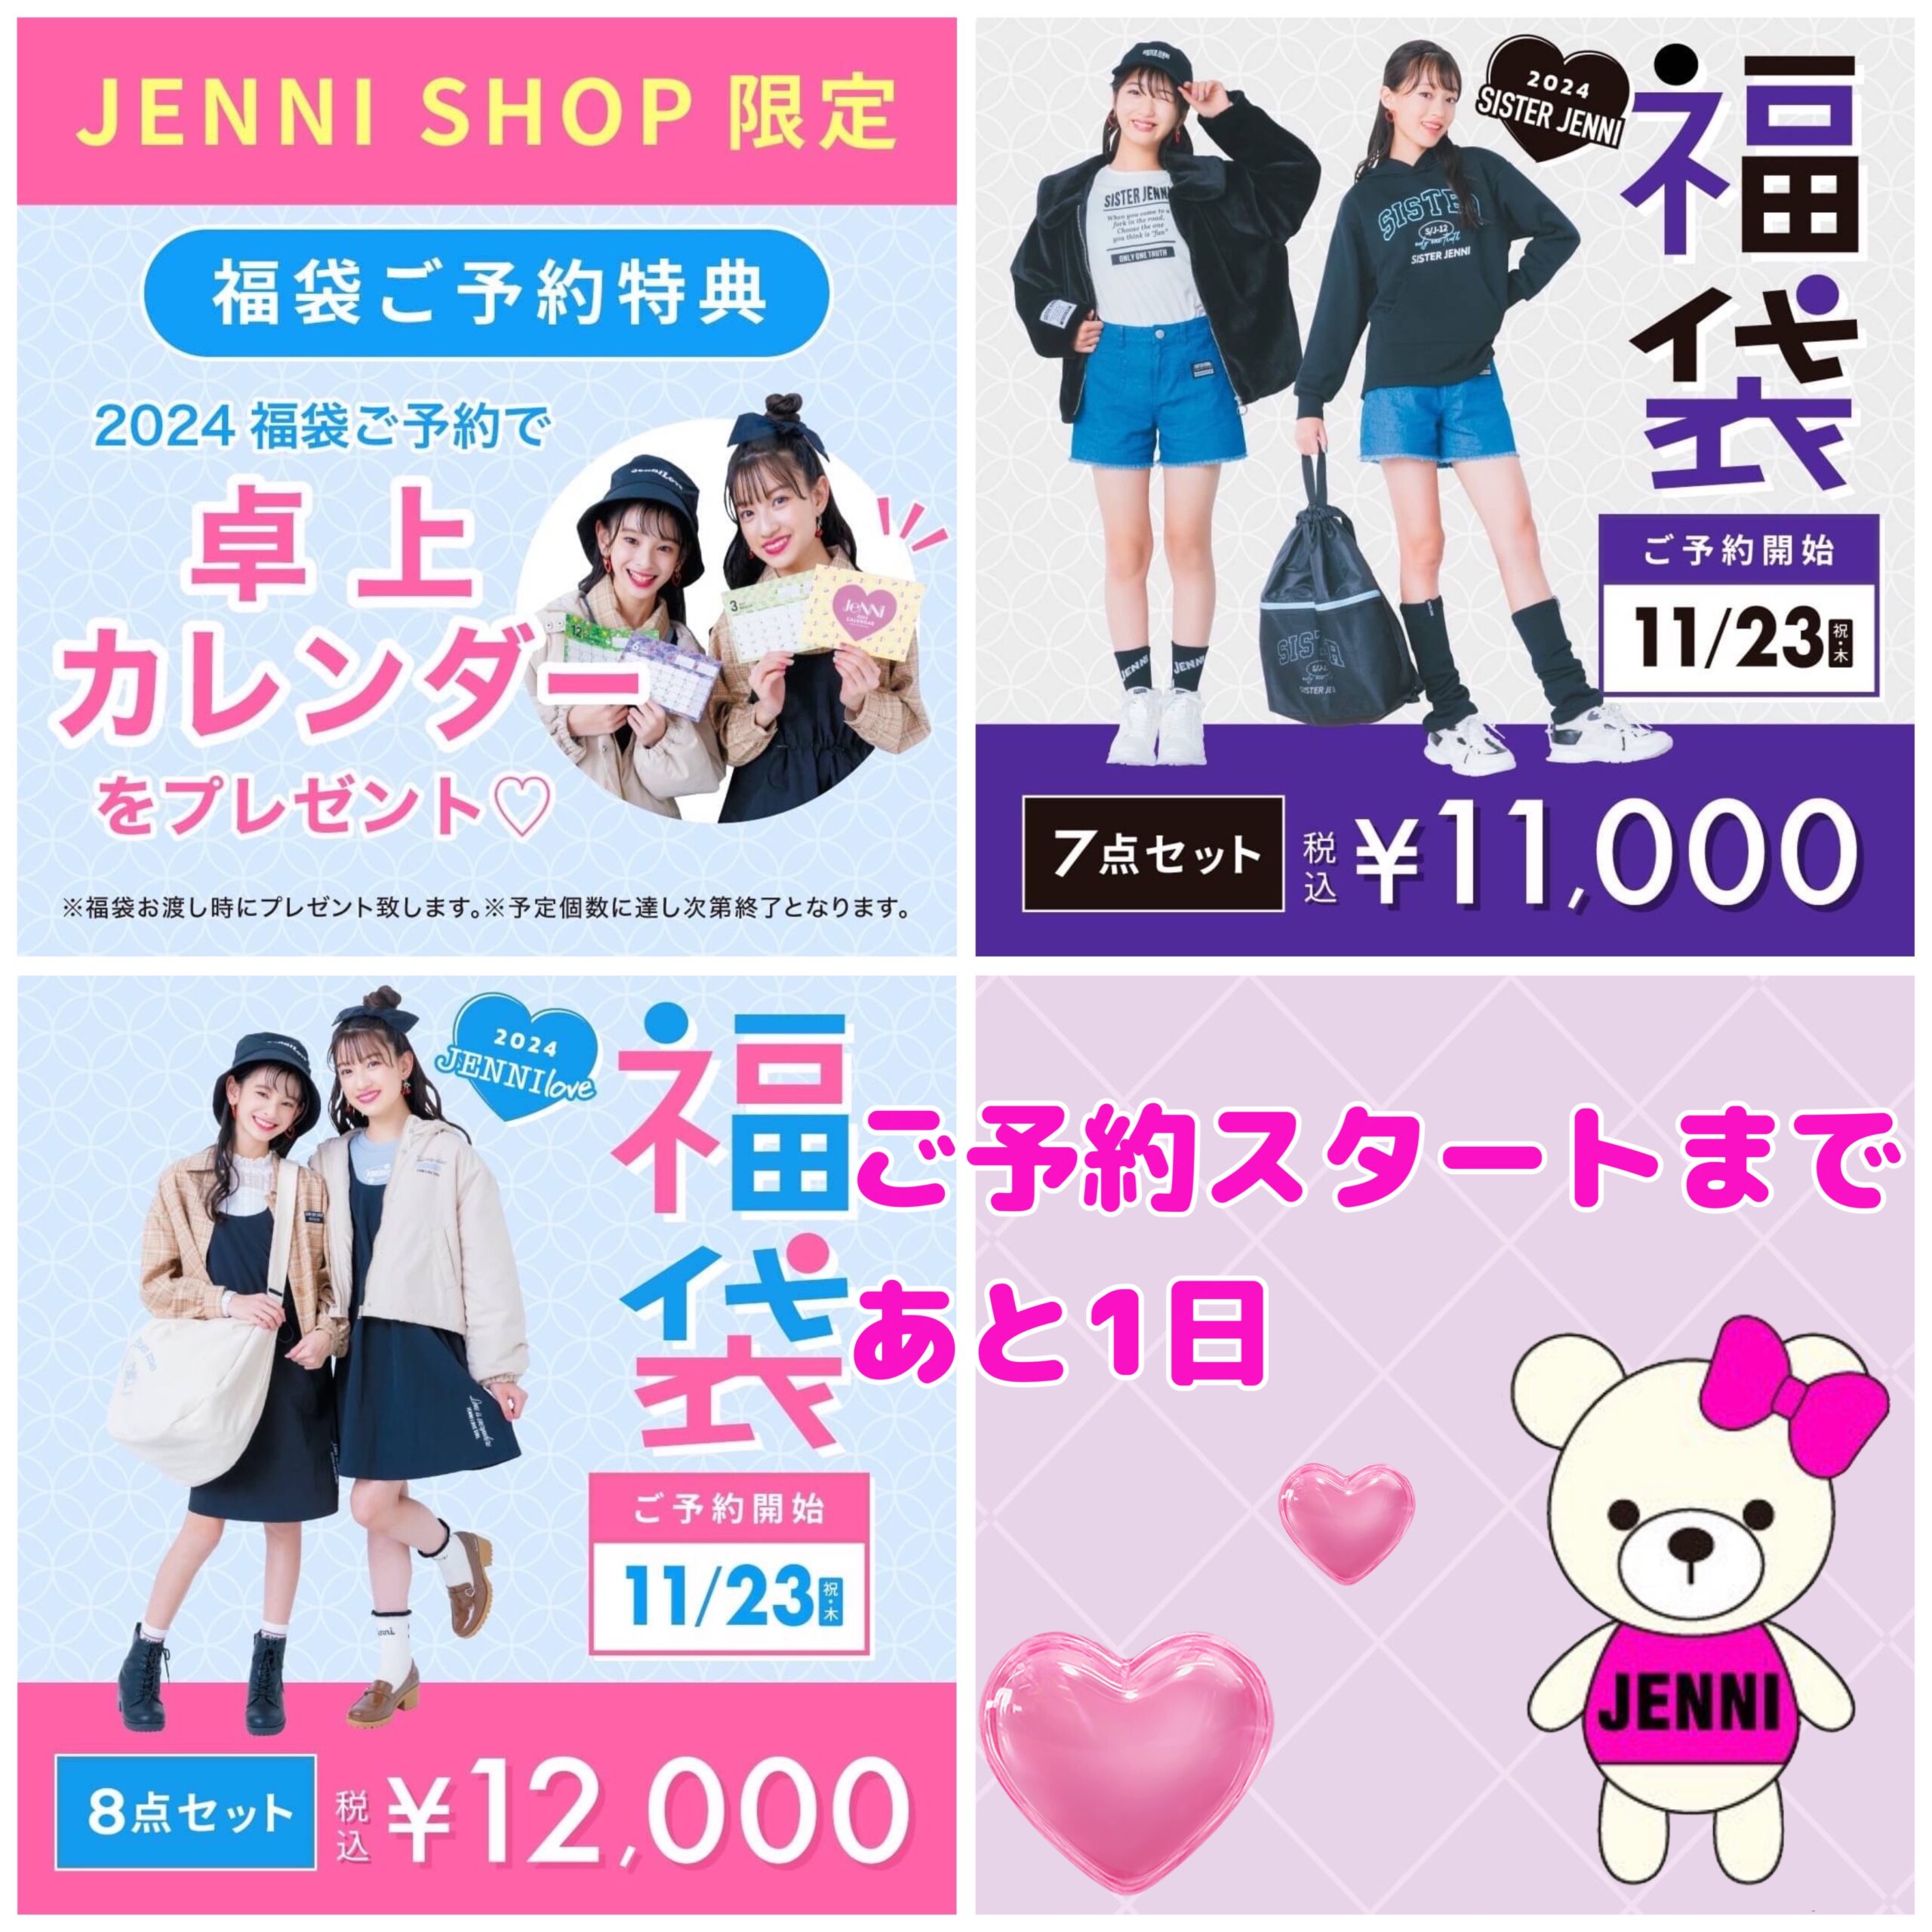 イオンモール京都桂川店 - JENNI SHOP BLOG